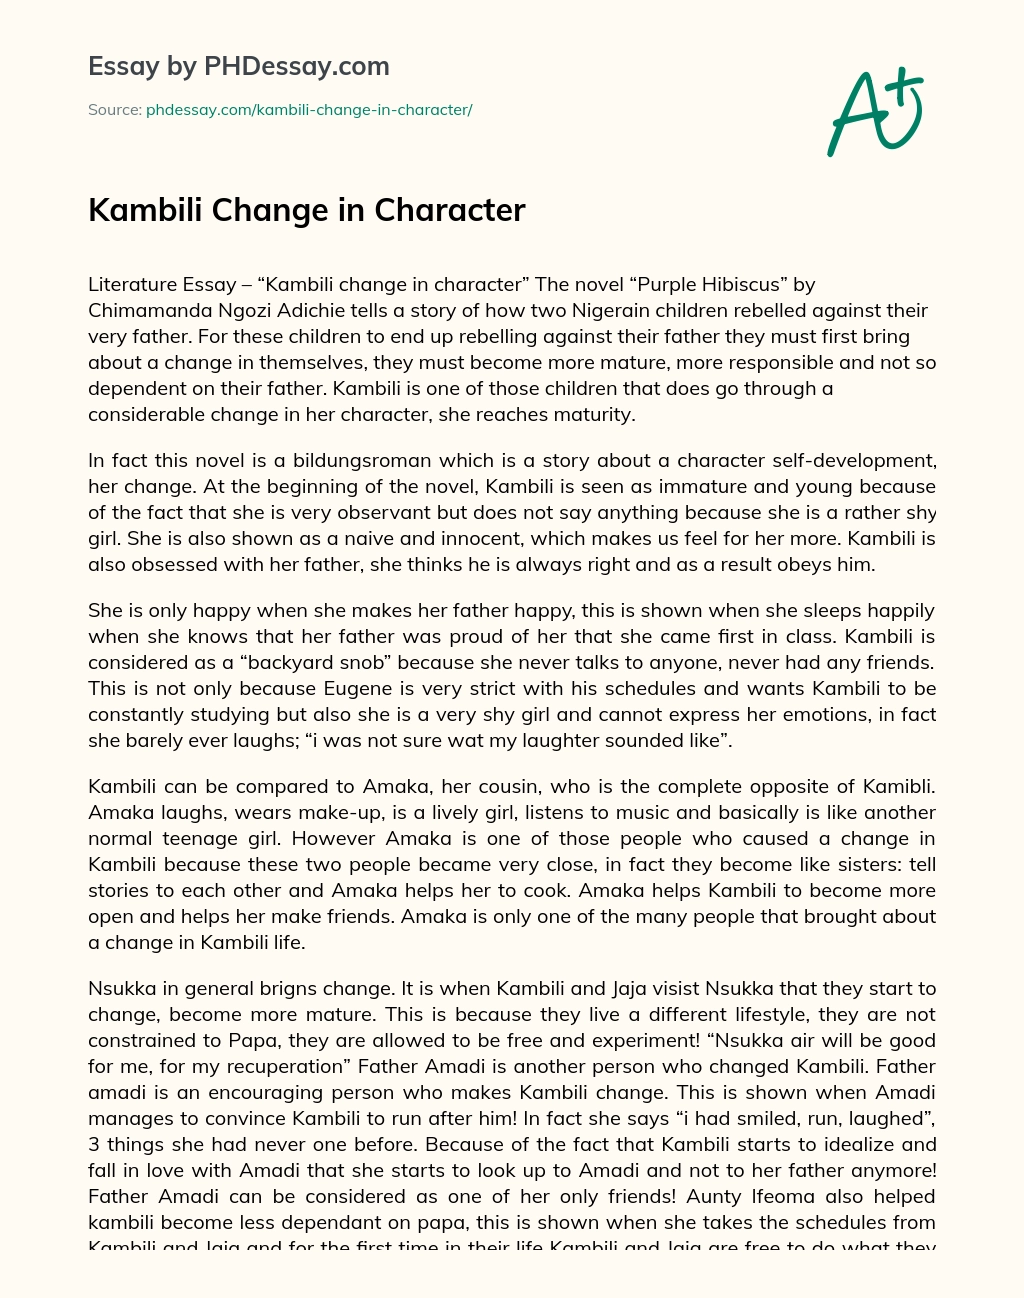 Kambili Change in Character essay